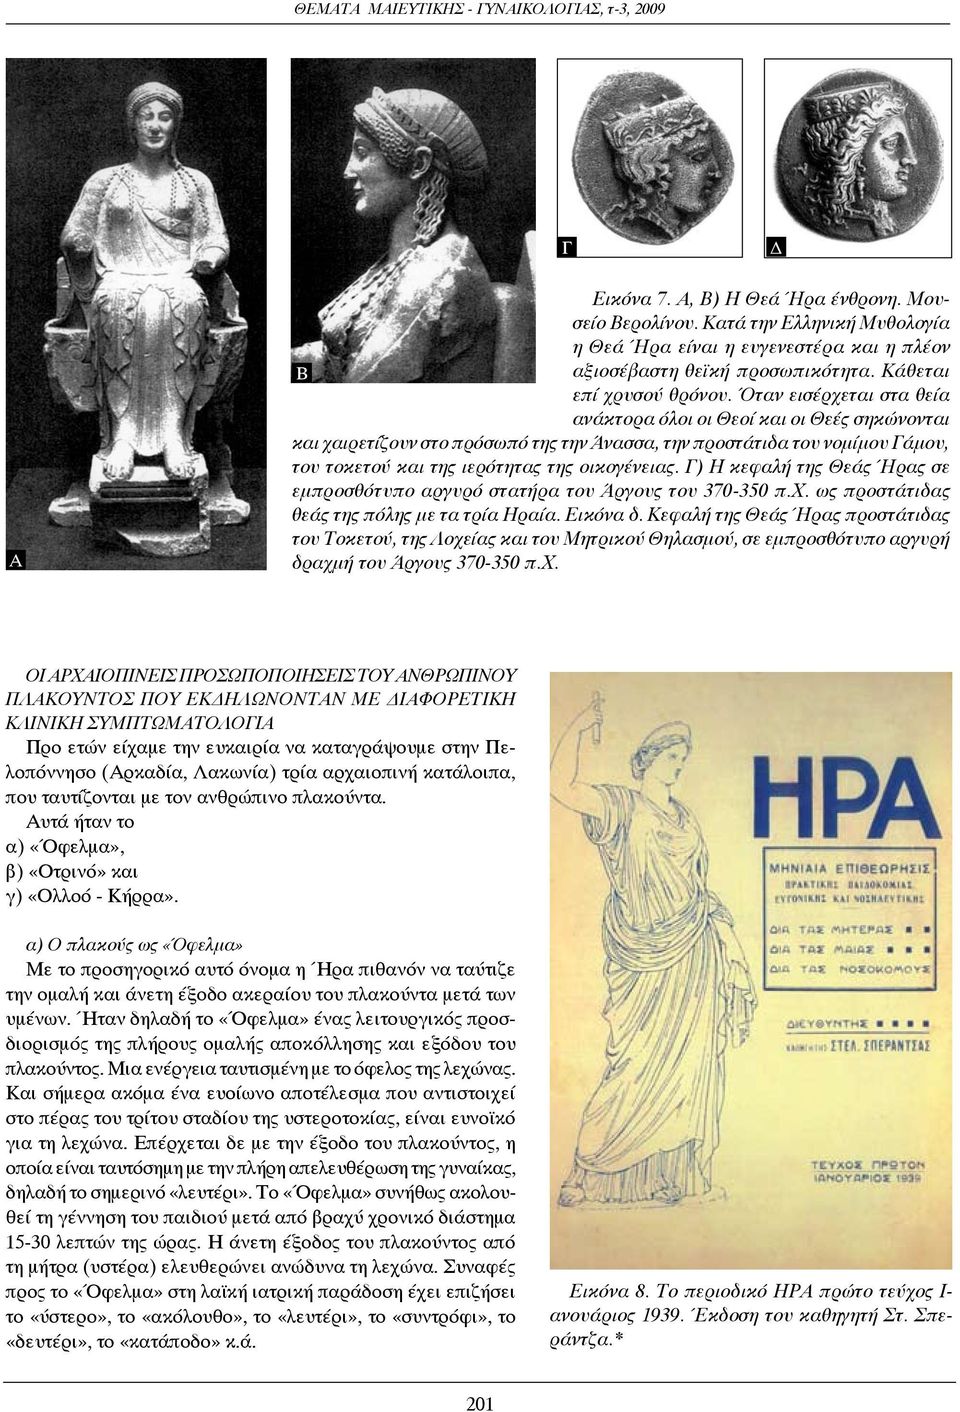 Γ) Η κεφαλή της Θεάς Ήρας σε εμπροσθότυπο αργυρό στατήρα του Άργους του 370-350 π.χ. ως προστάτιδας θεάς της πόλης με τα τρία Ηραία. Εικόνα δ.